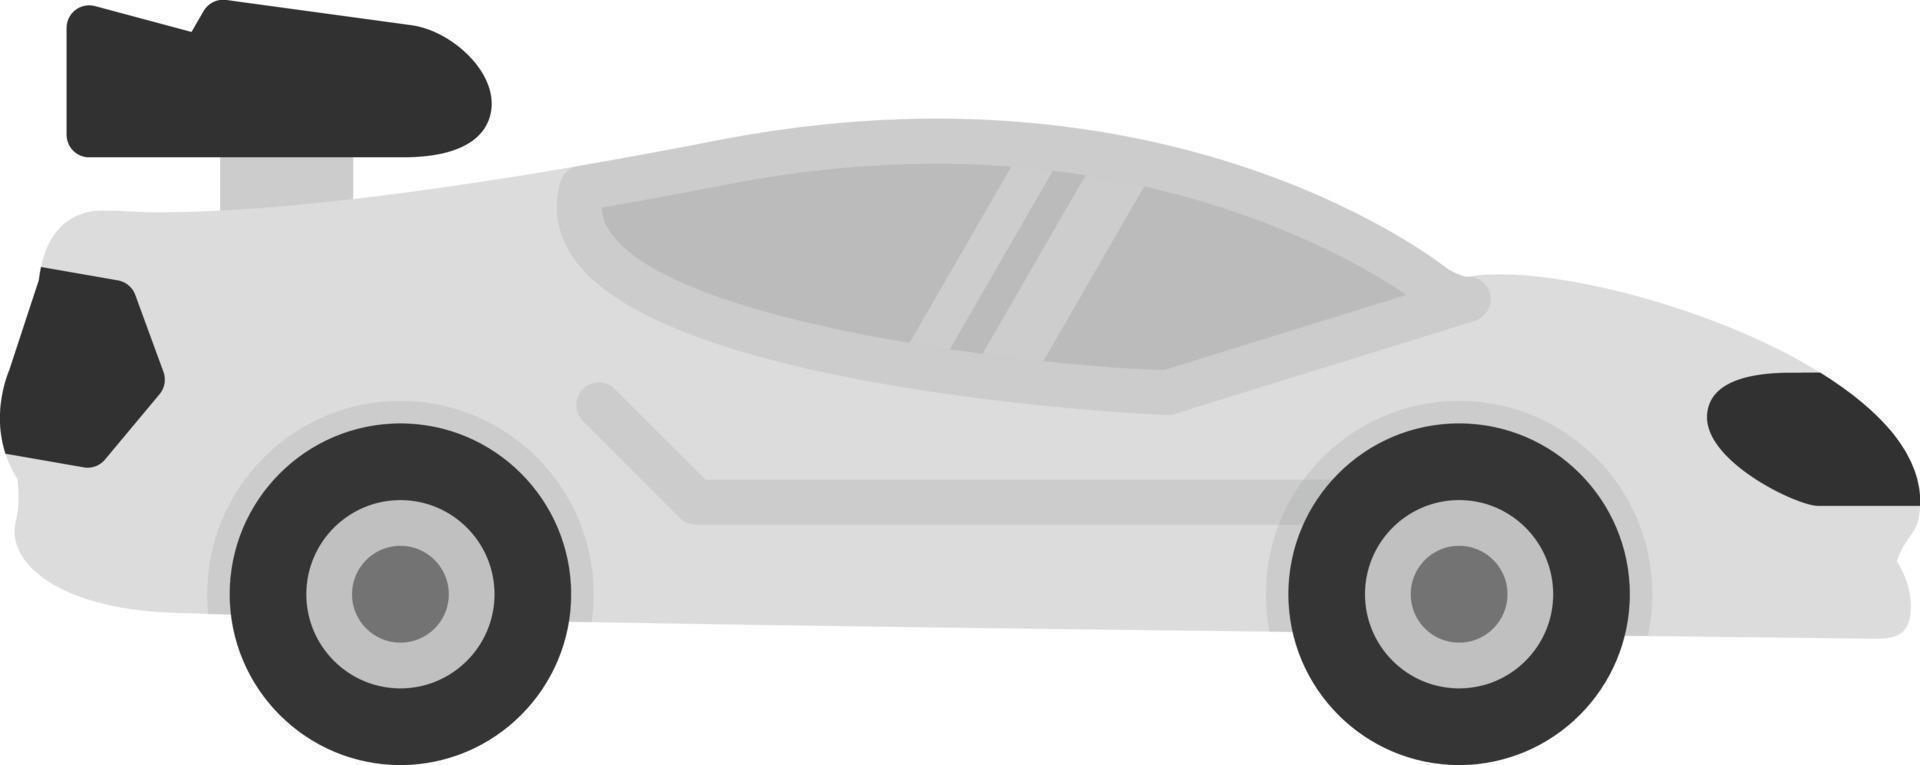 diseño de icono creativo de coche deportivo vector